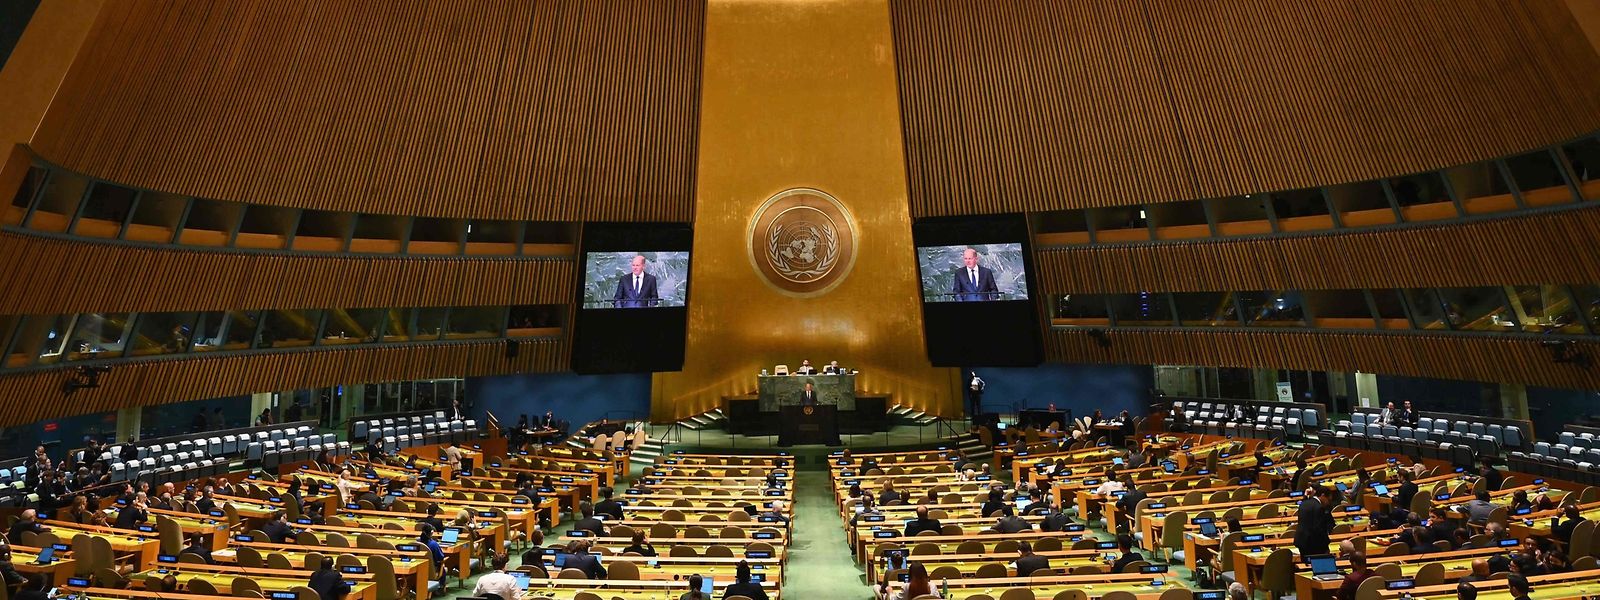 L'Assemblée générale de l'ONU a lieu cette semaine à New-York.